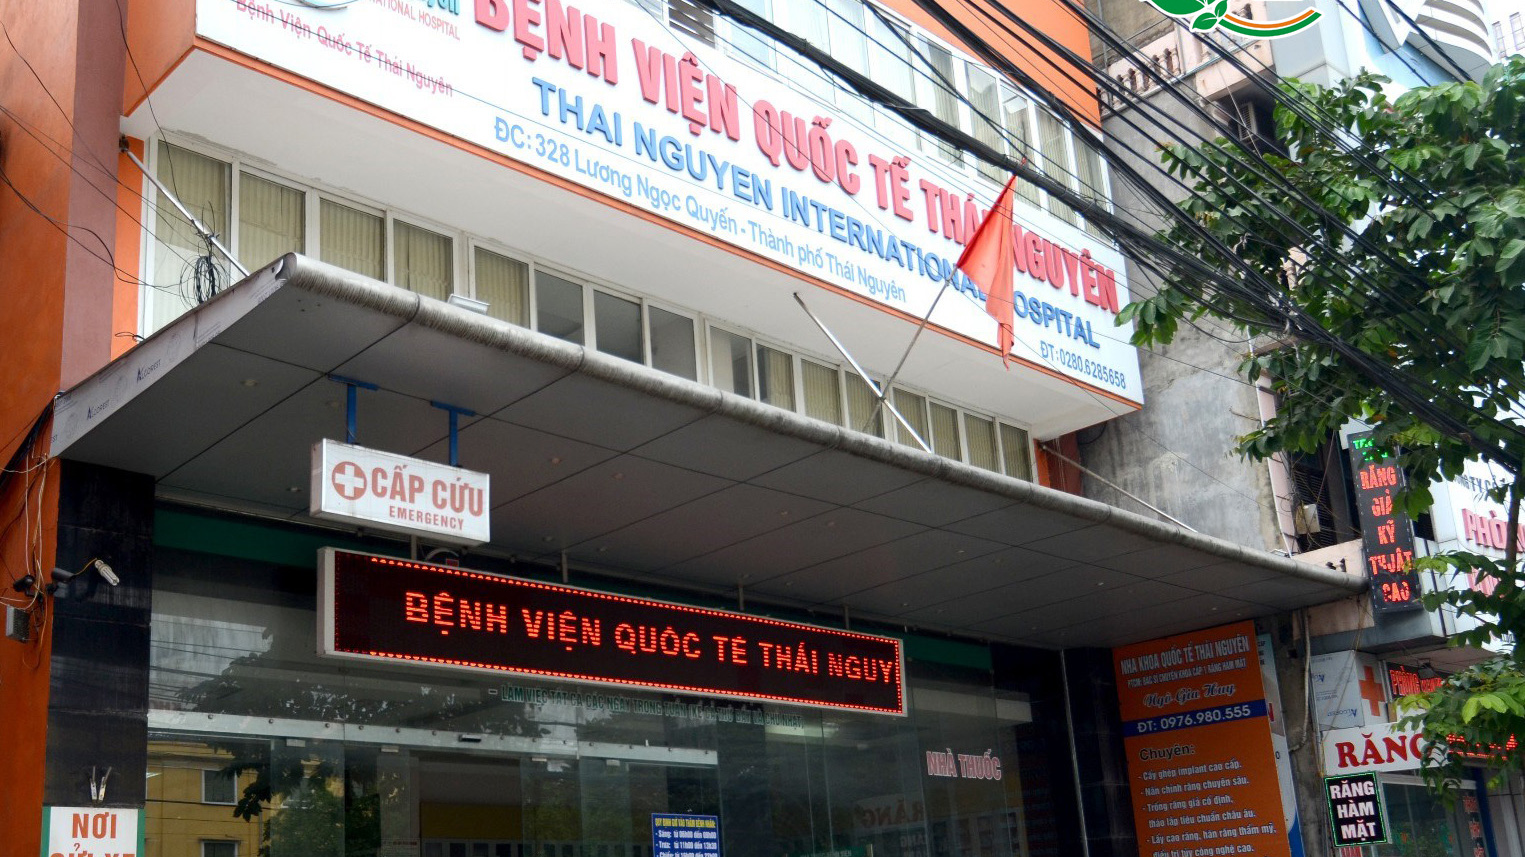 Bệnh viện quốc tế Thái Nguyên kể từ khi được thành lập đã luôn nỗ lực để mang lại sự chăm sóc y tế tốt nhất cho cộng đồng. Với trang bị thiết bị y tế tiên tiến và đội ngũ bác sĩ, y tá có trình độ chuyên môn cao, BVQT Thái Nguyên đã trở thành điểm đến y tế đáng tin cậy của người dân trong và ngoài tỉnh.